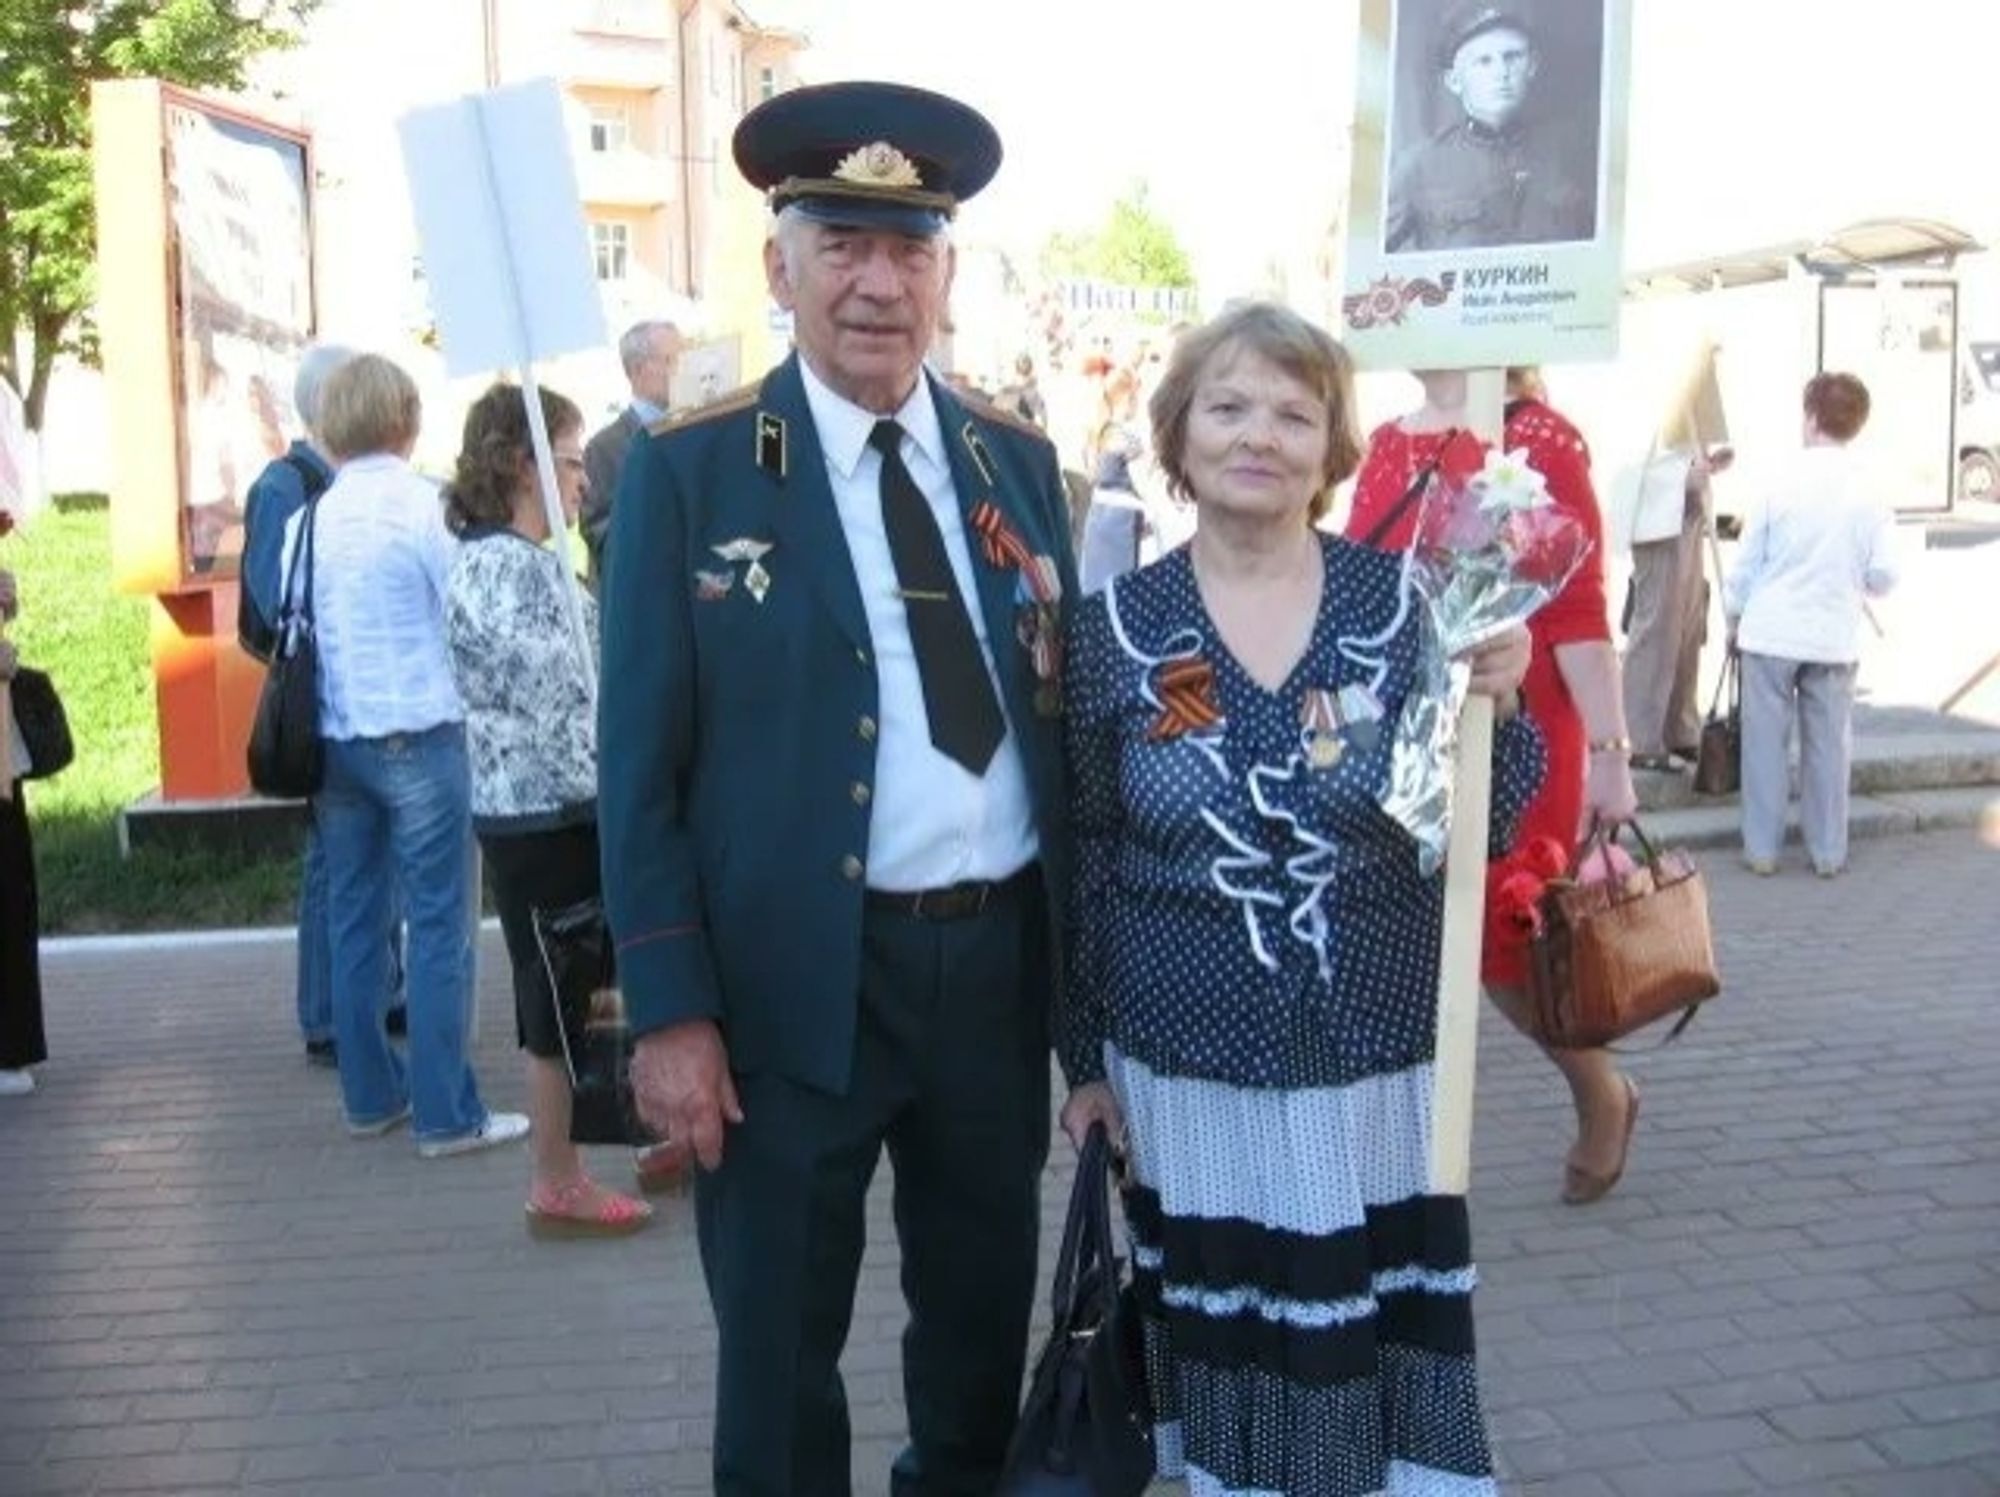 Батьки Сирського живуть у Росії: що відомо про сім’ю нового головнокомандувача ЗСУ